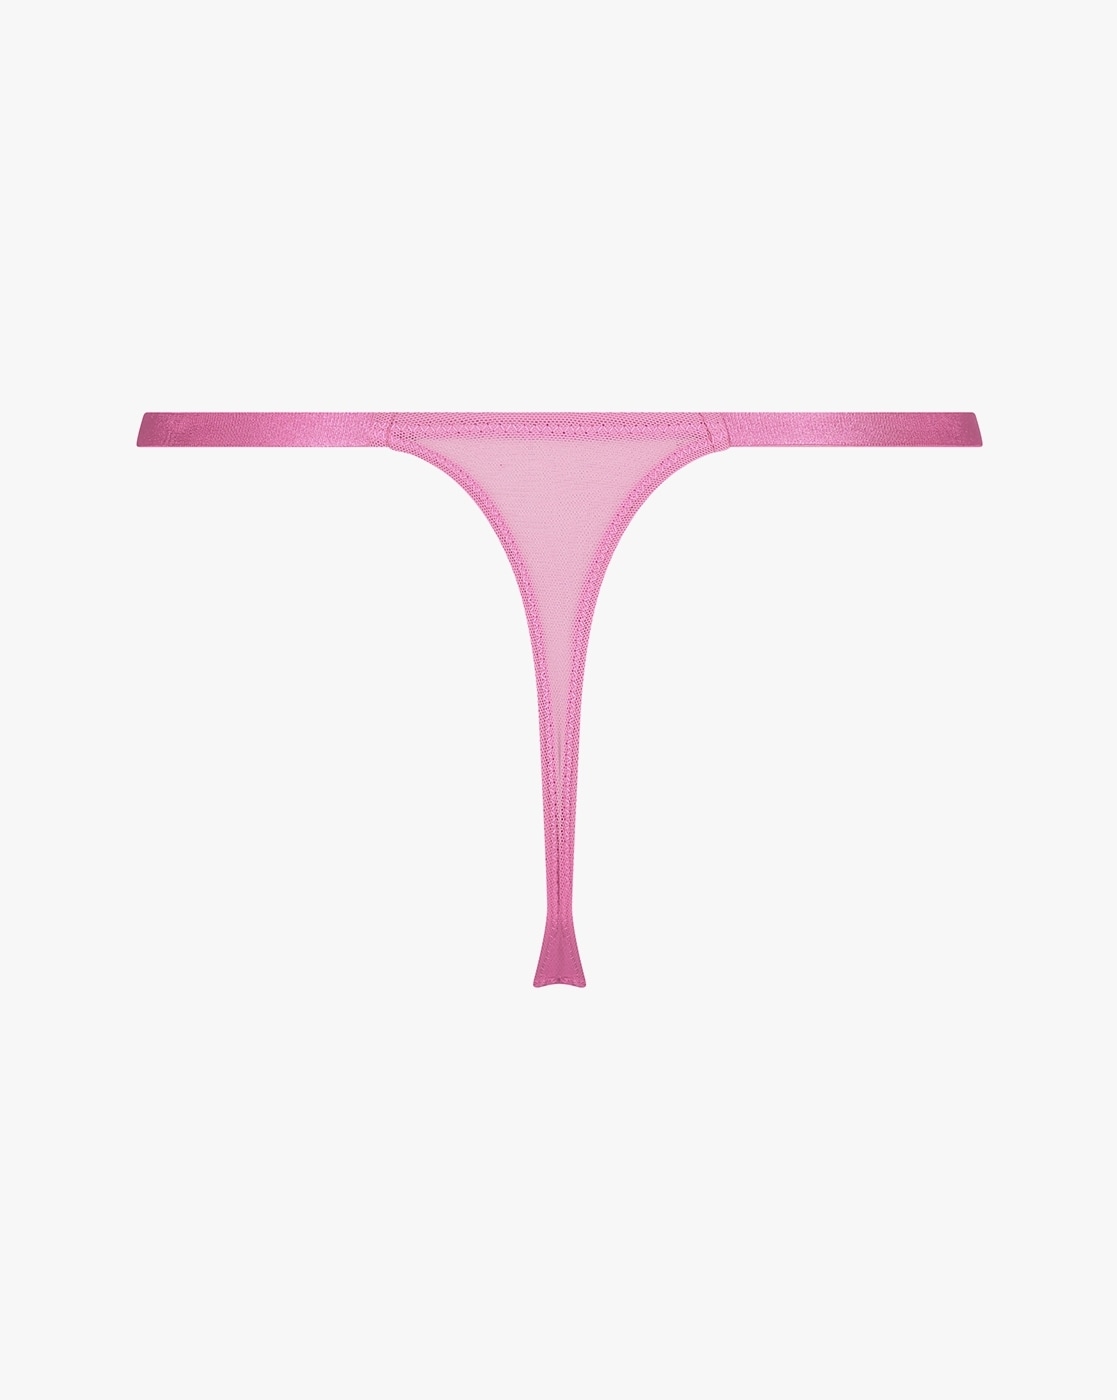 Hunkemoller Corby High-Cut Thong Panties 2024, Buy Hunkemoller Online